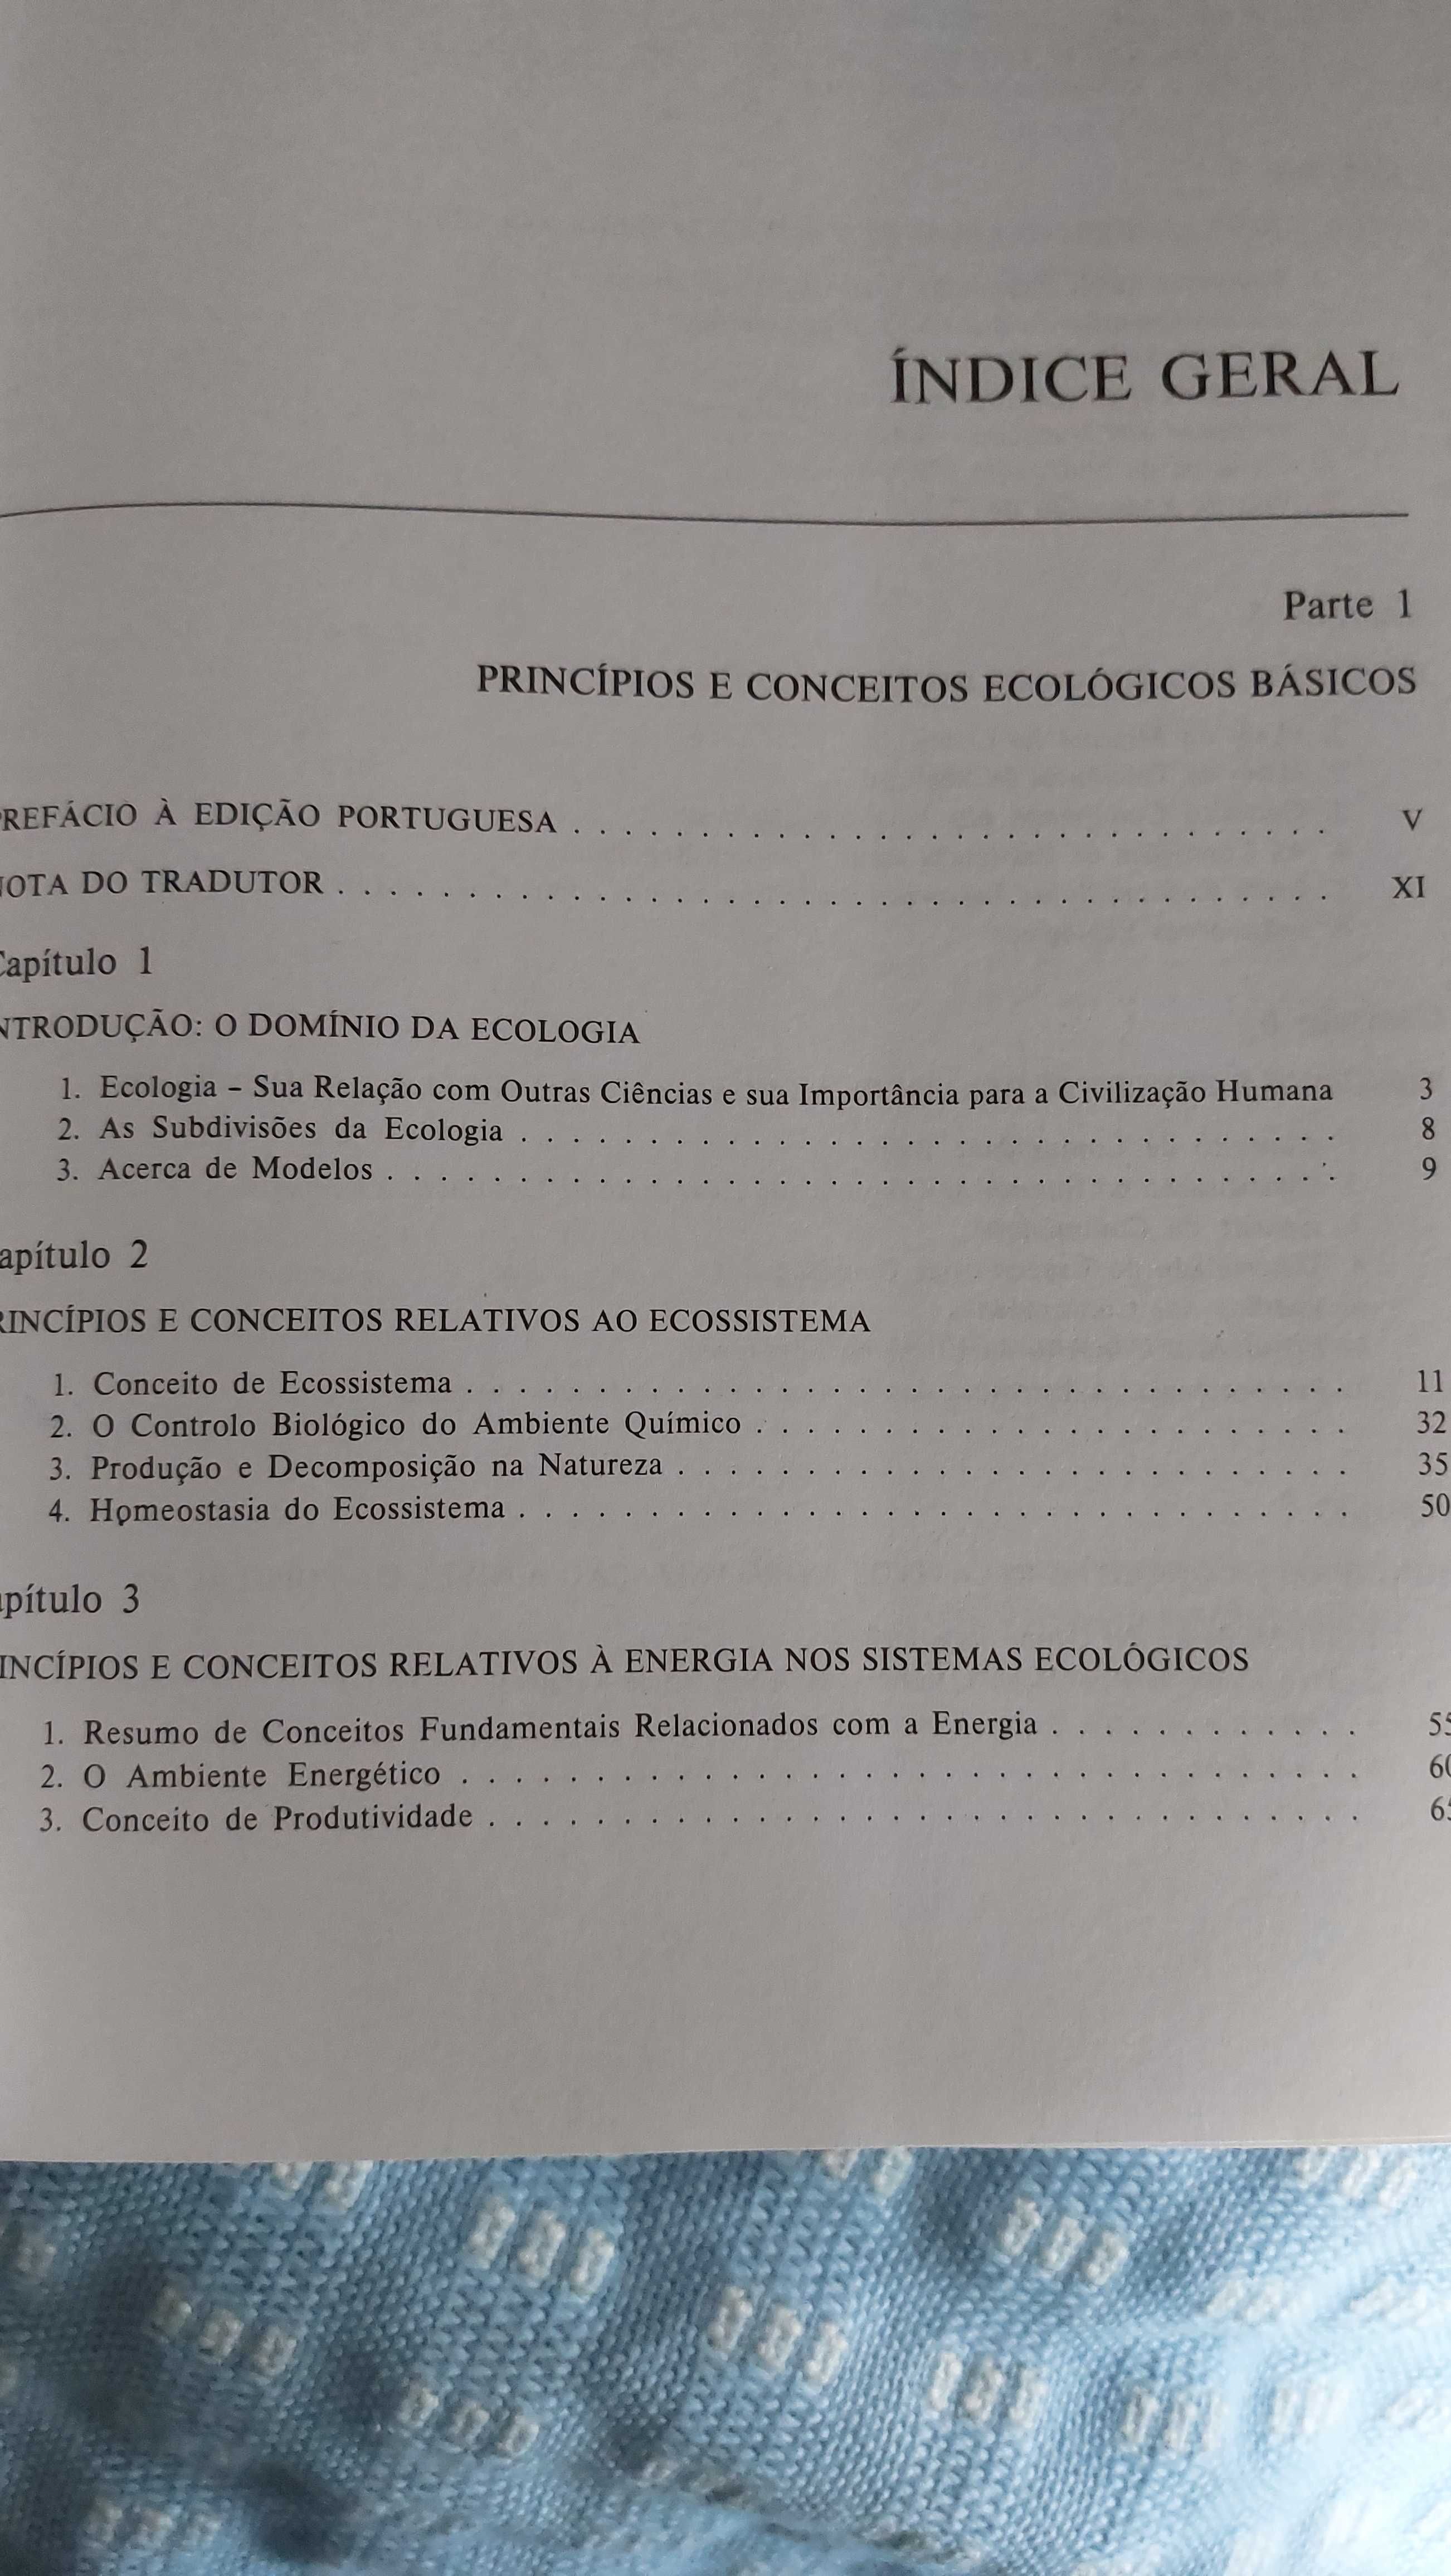 Livro "Fundamentos de Ecologia", Eugene P. Odum (F. G. Gulbenkian)